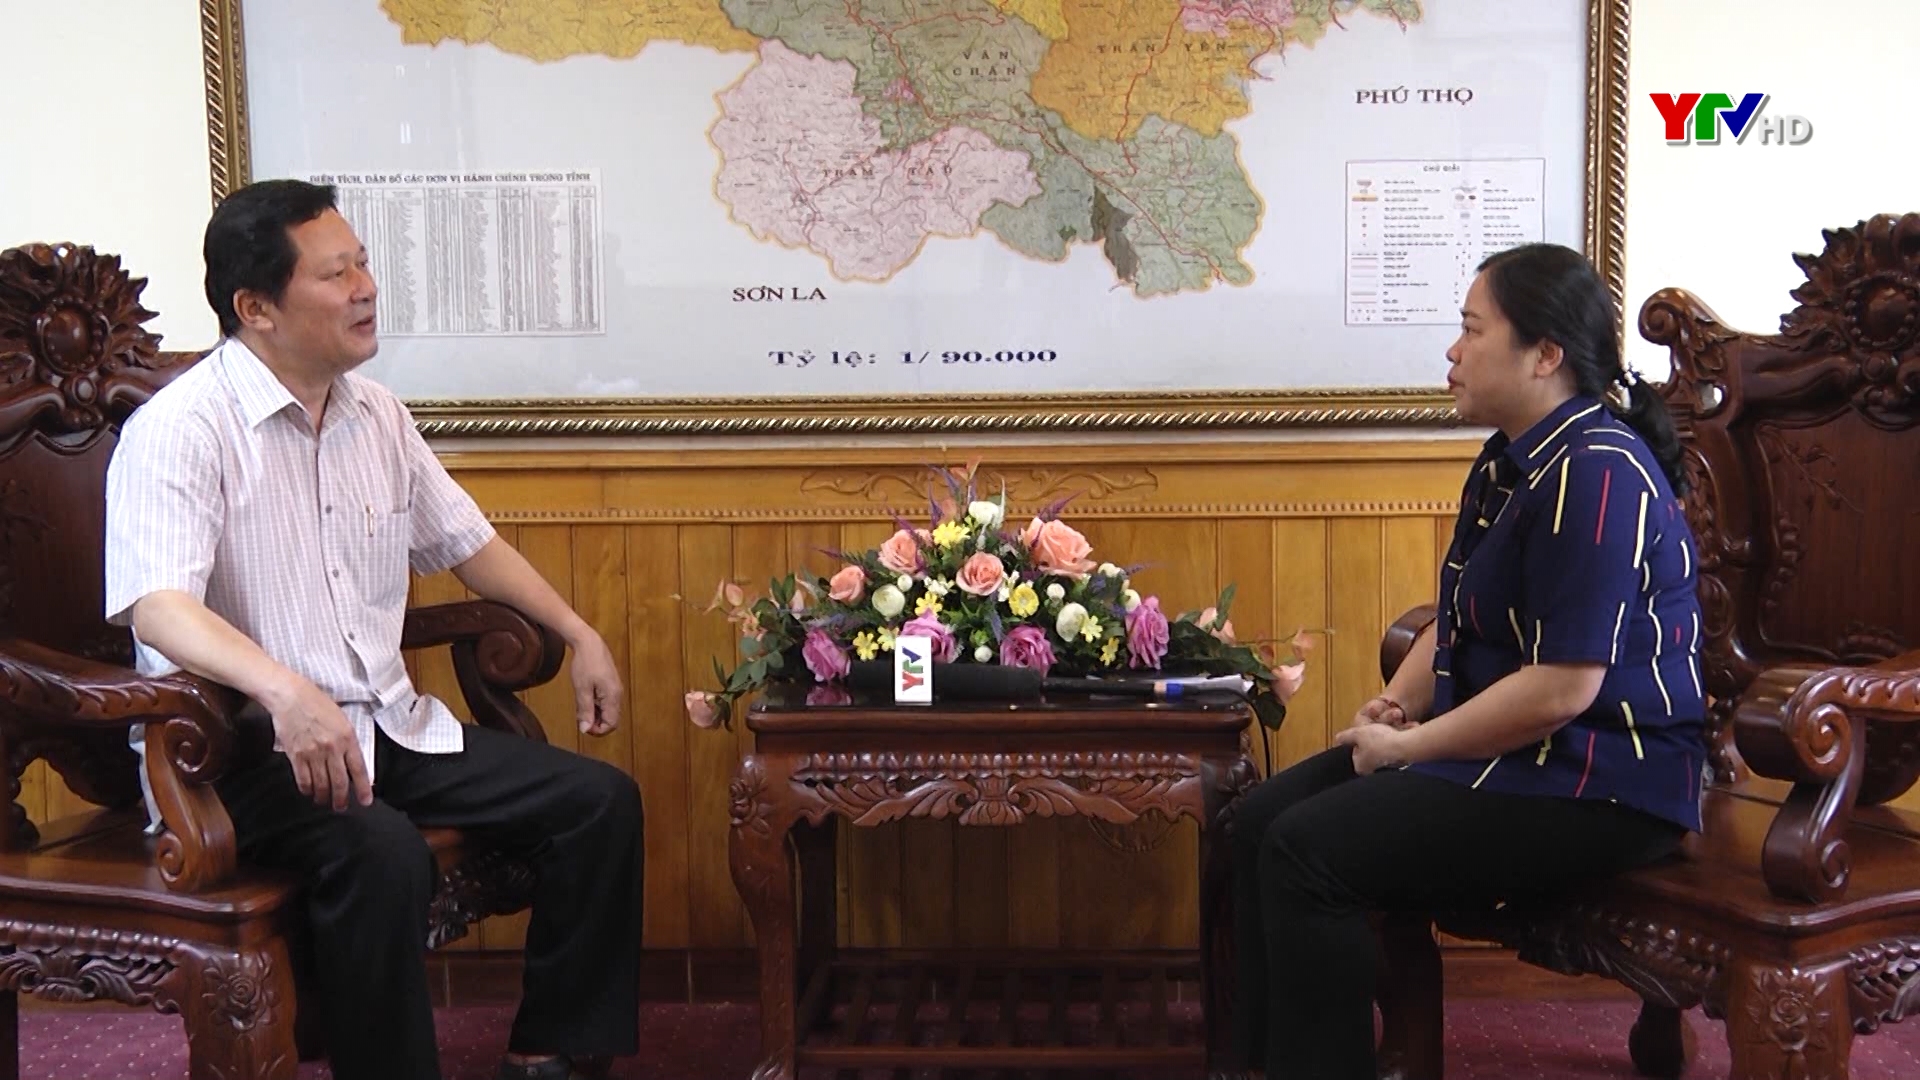 Phỏng vấn ông Vương Văn Bằng - Giám đốc Sở Giáo dục và Đào tạo Yên Bái